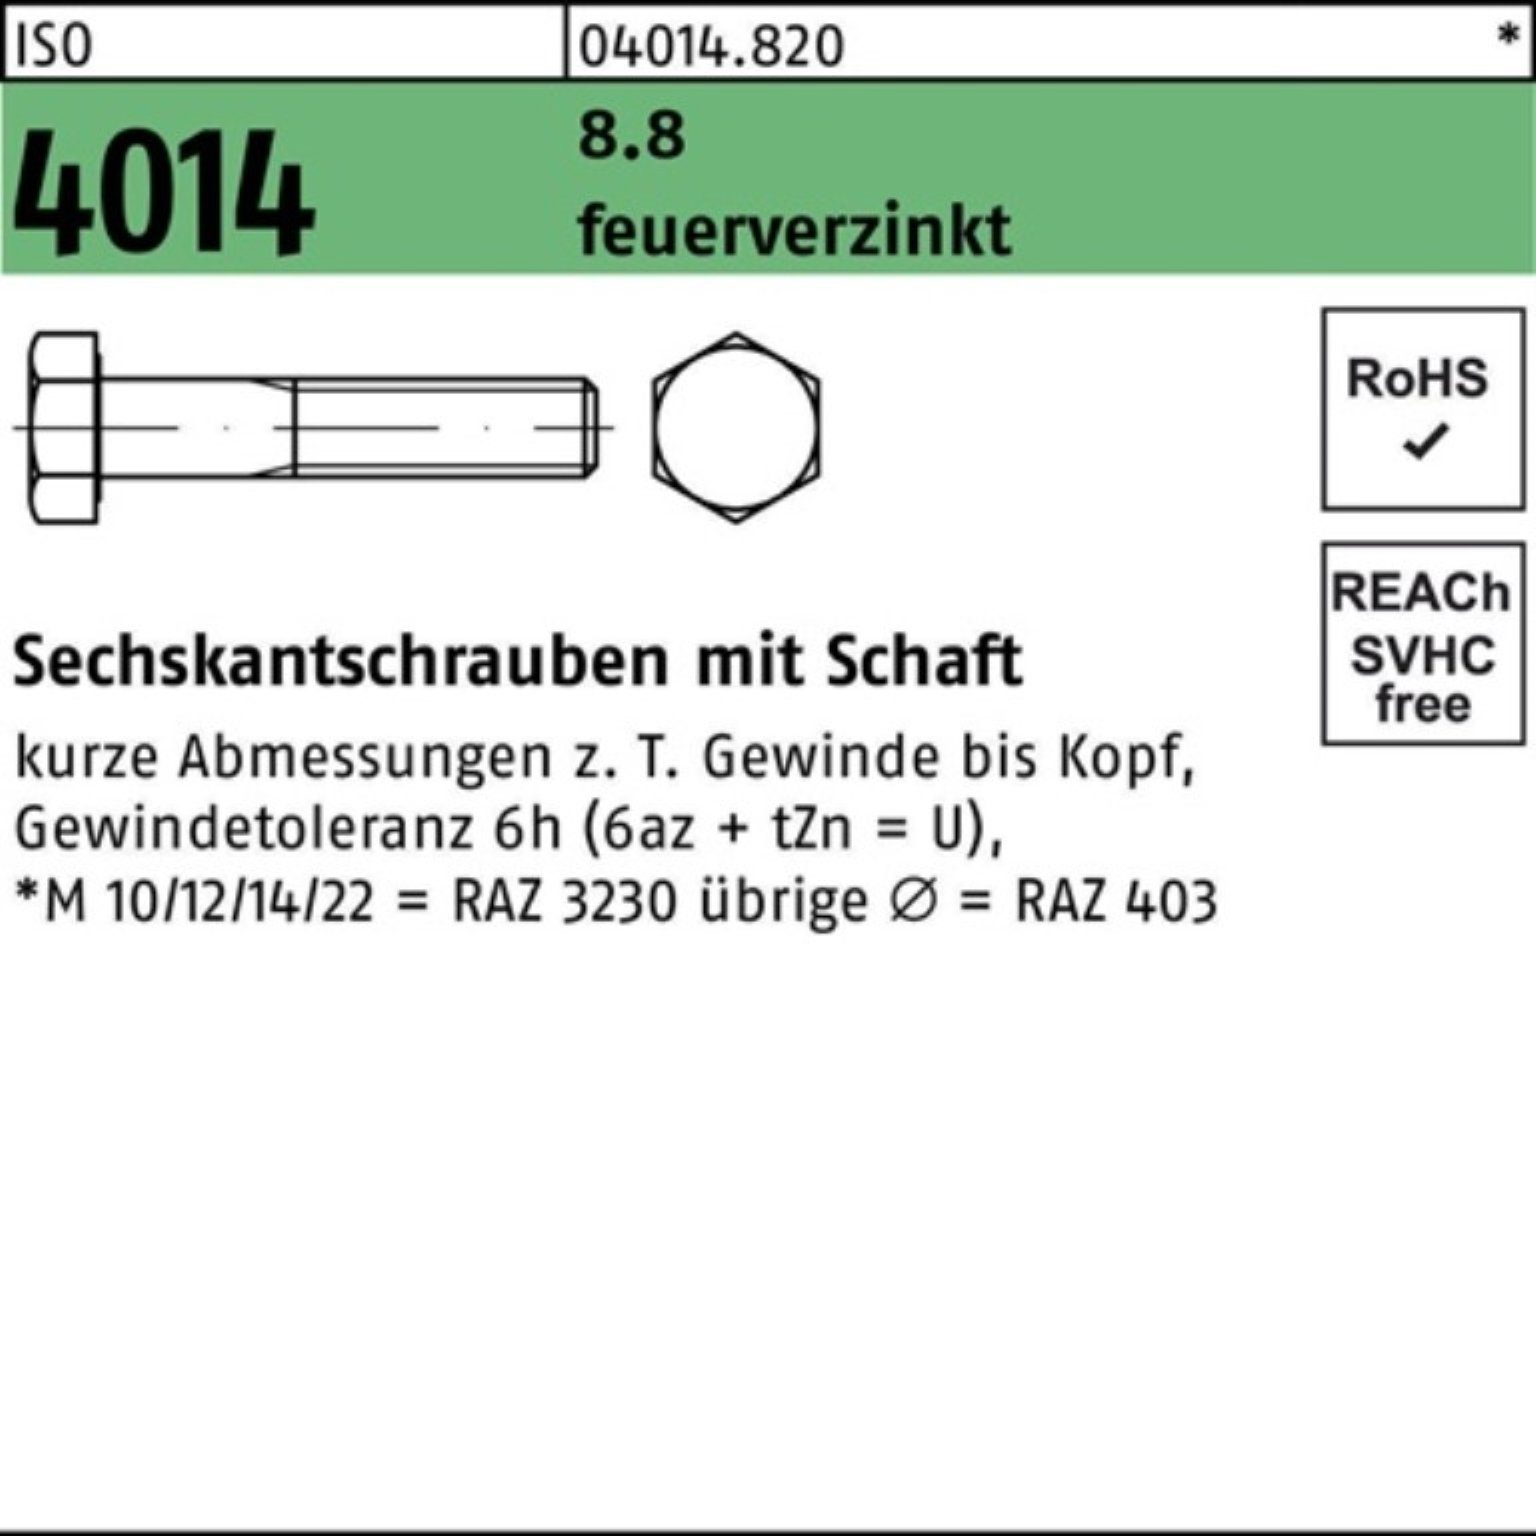 1 Pack ISO Sechskantschraube Sechskantschraube 4014 feuerverz. 8.8 100er Bufab Schaft 200 M20x